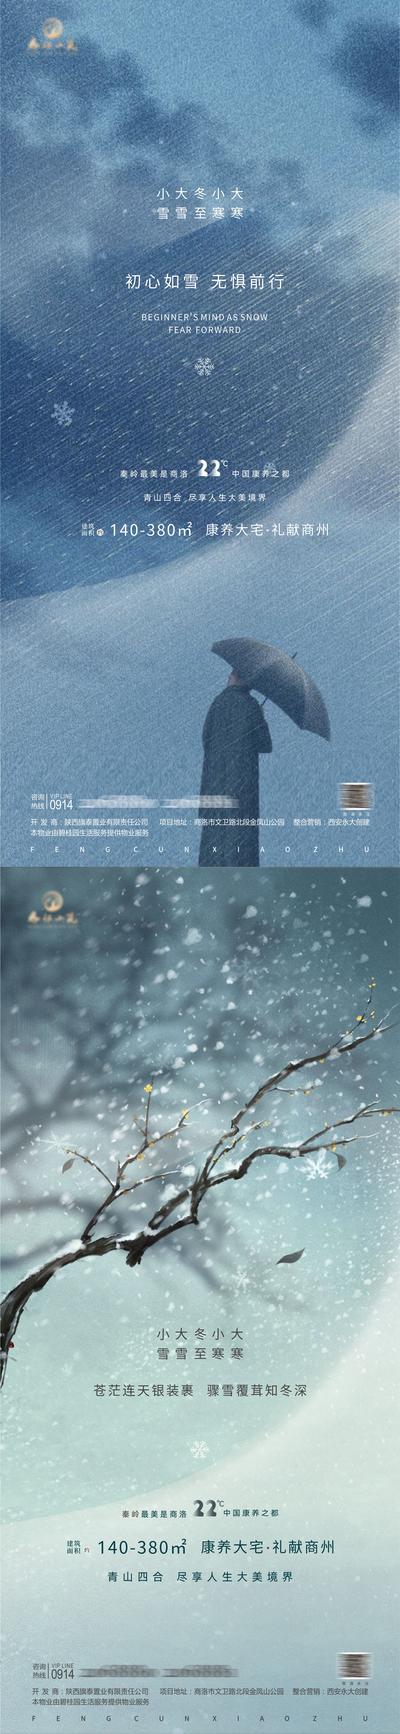 【南门网】海报 房地产   小雪  大雪  冬至  小寒  大寒  二十四节气 雨伞 树枝